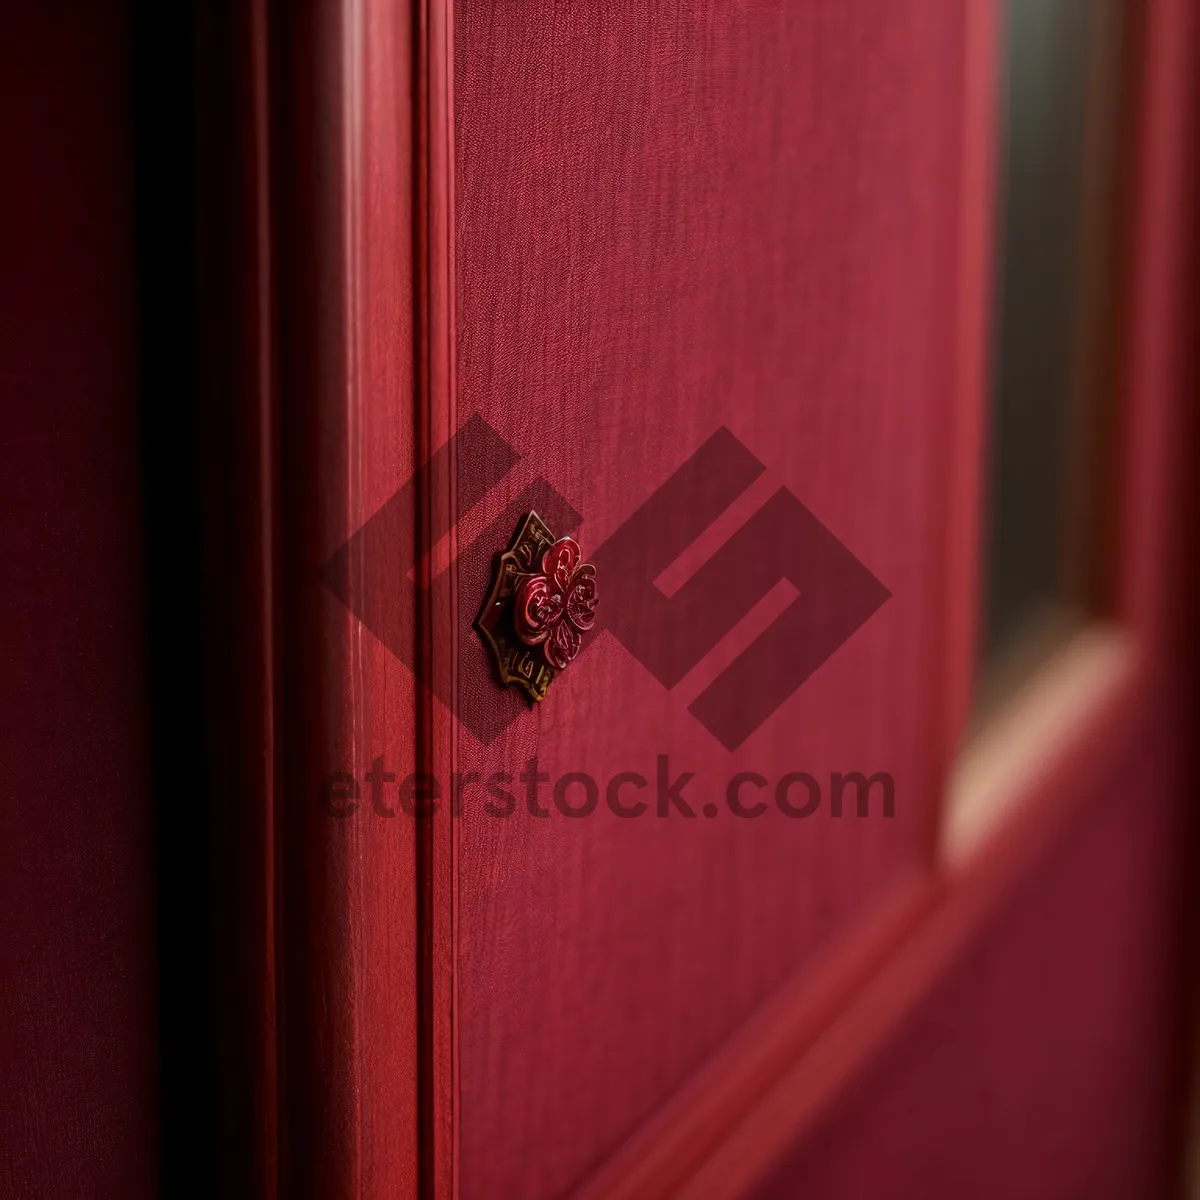 Picture of Vintage Wooden Door with Rustic Lock